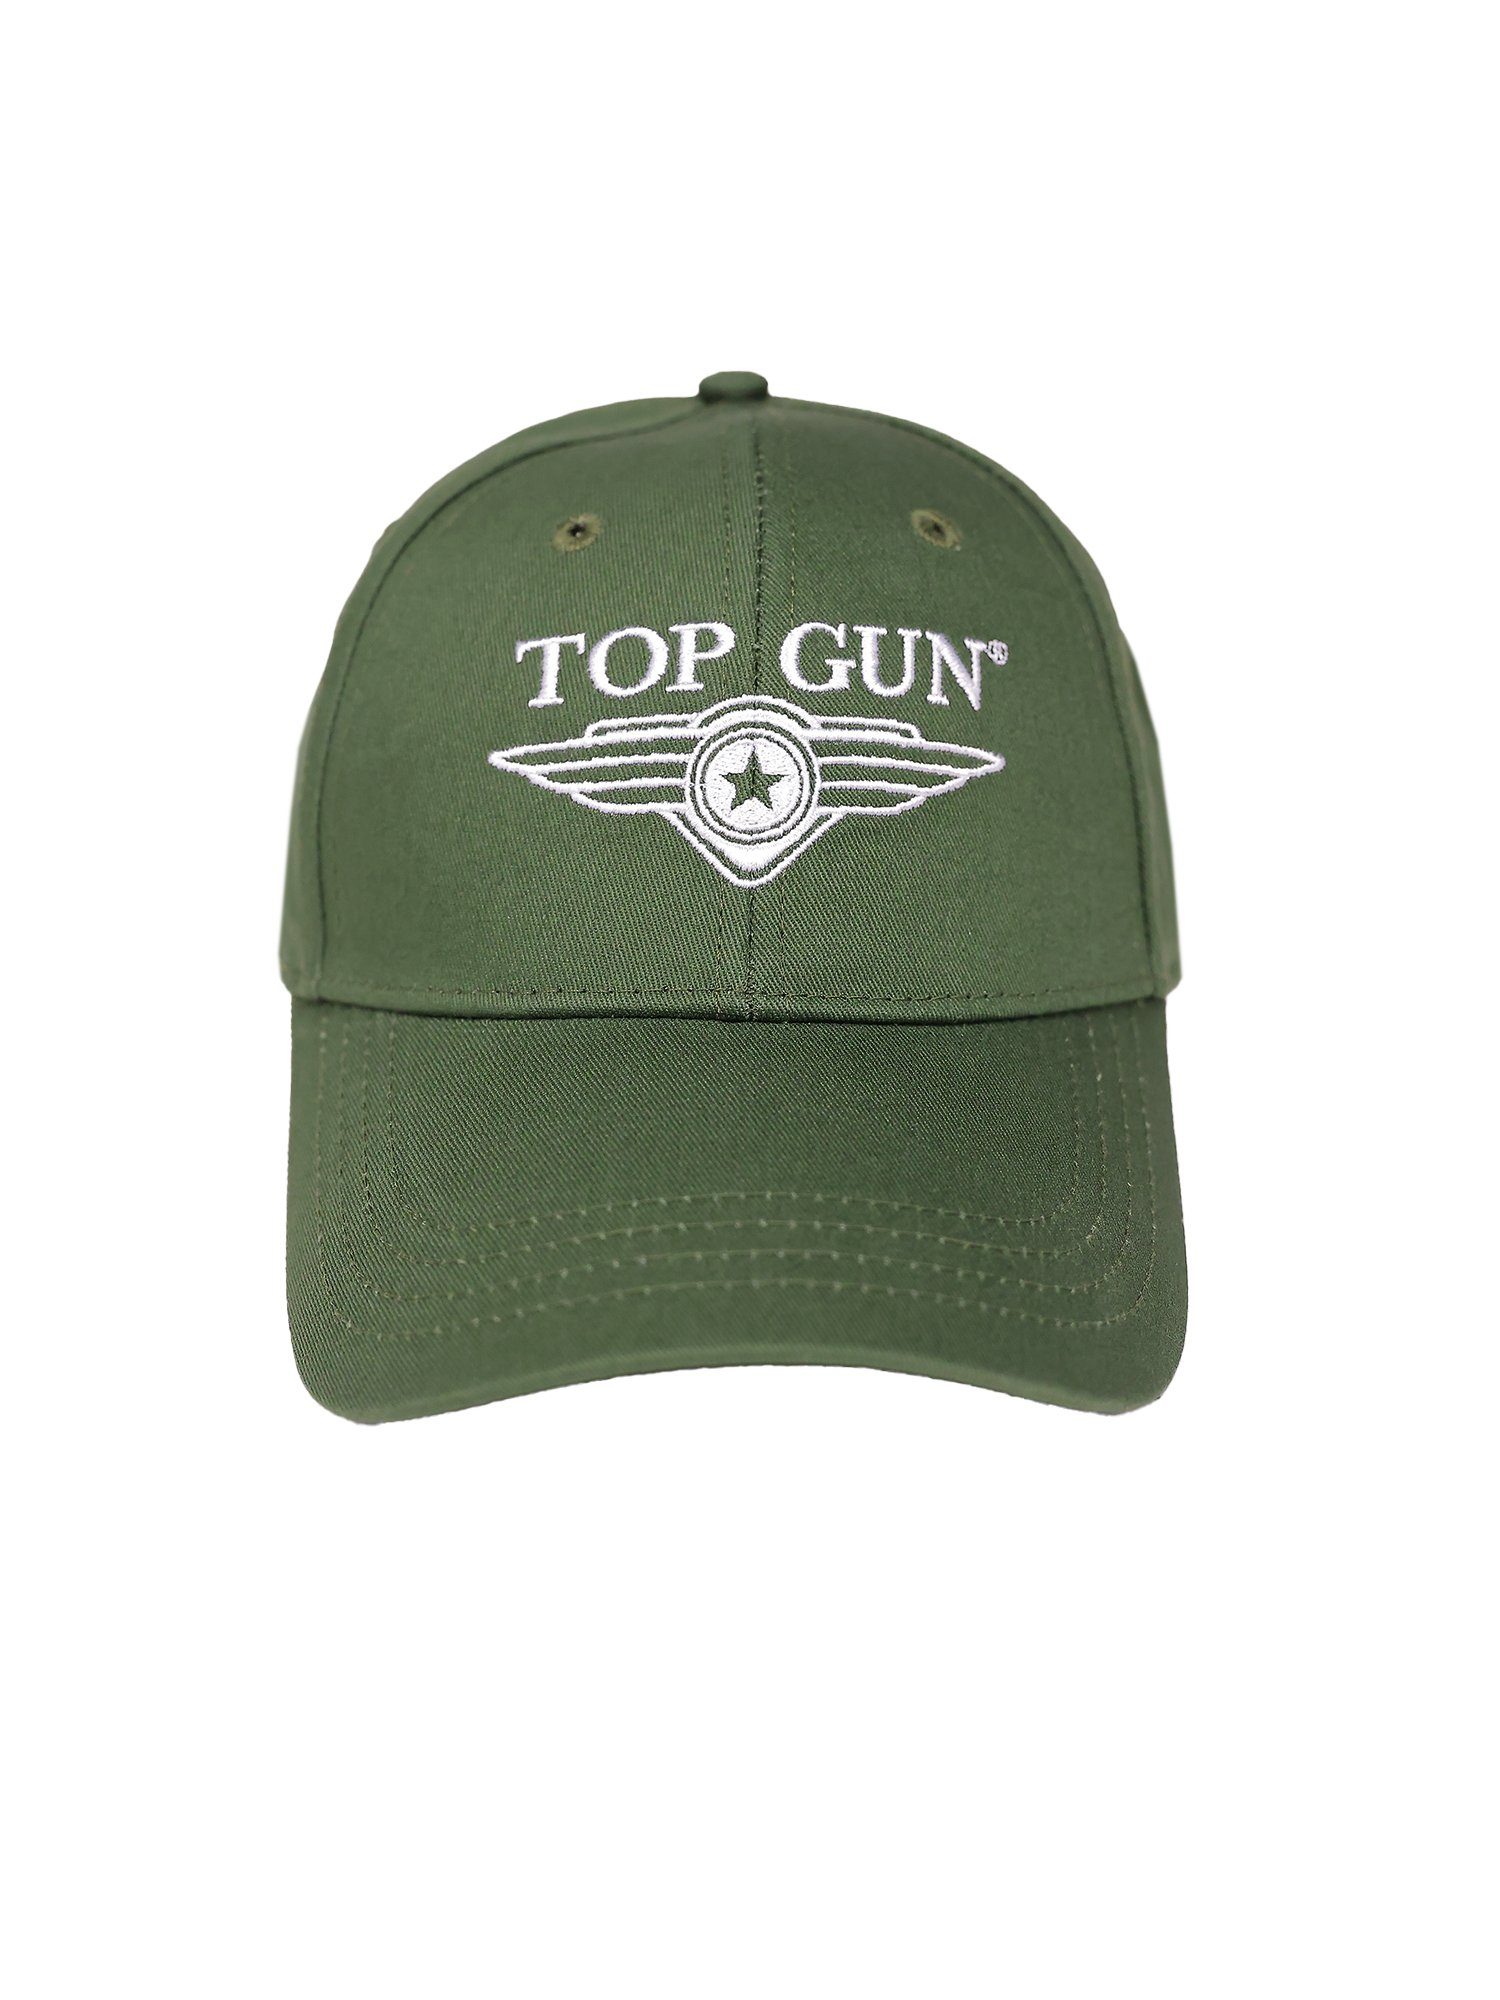 TOP GUN TG22013 Snapback Cap olive